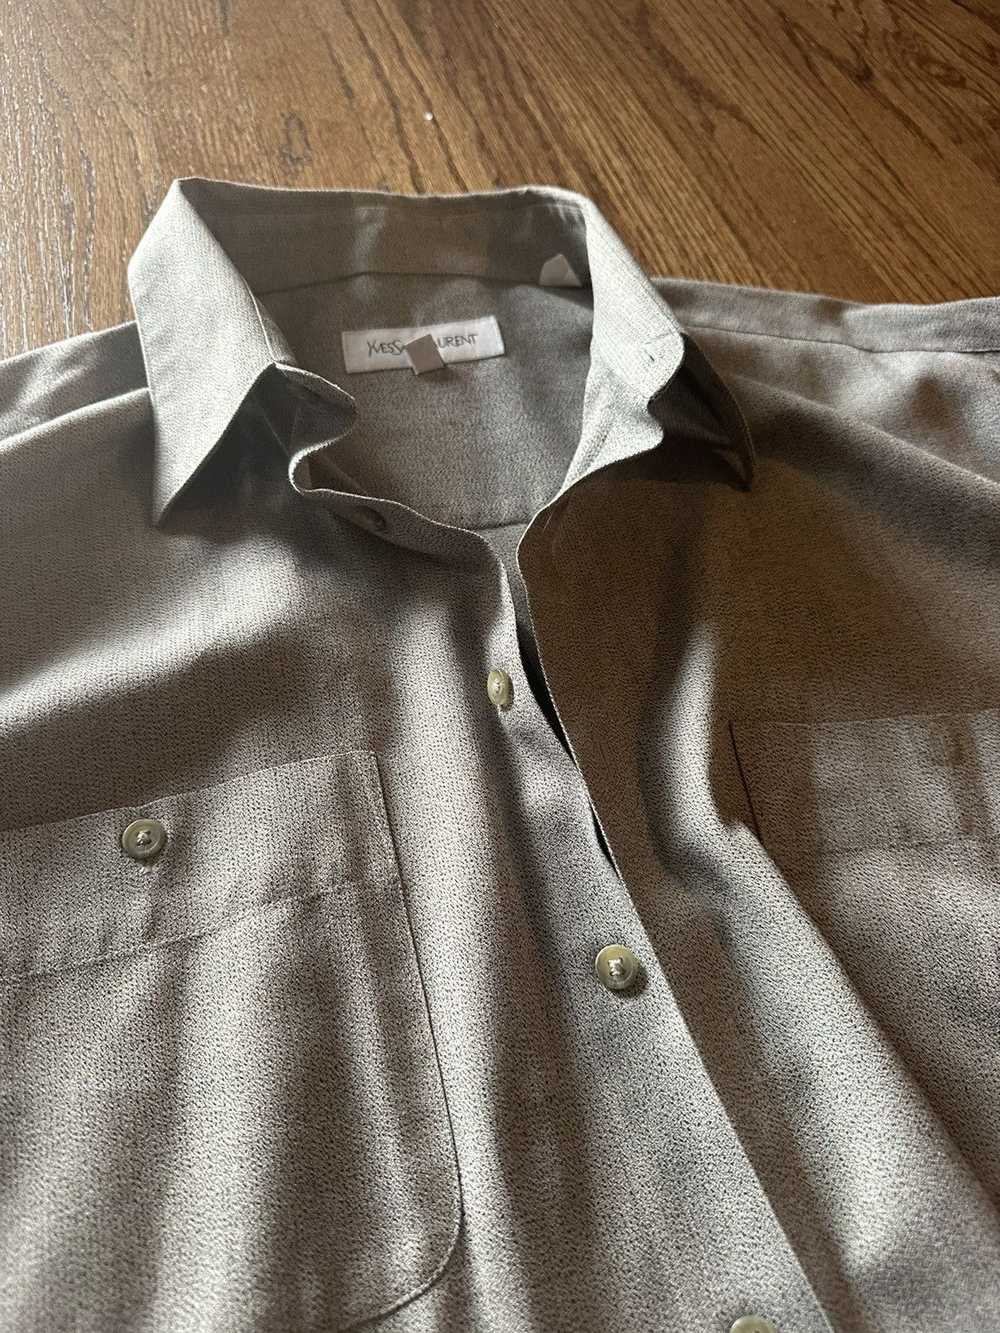 Yves Saint Laurent Vintage grey button shirt - image 2